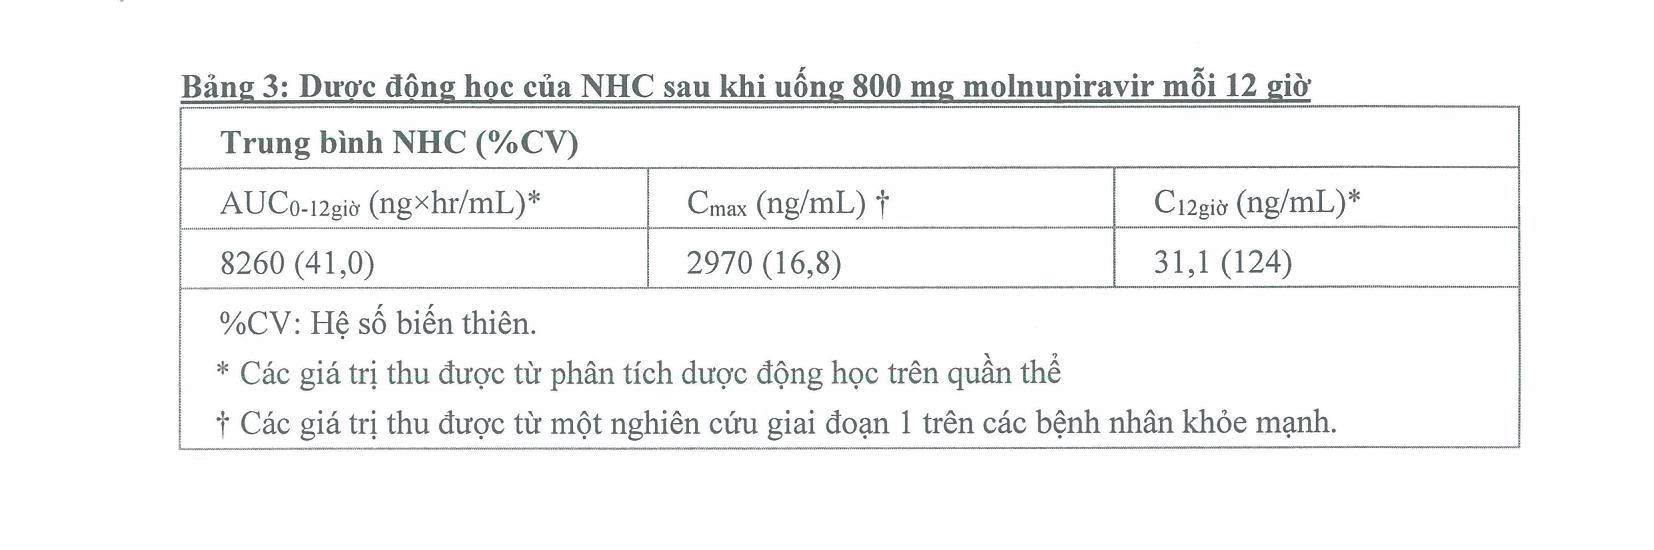 Dược động học của NHC sau khi uống 800 mg Molnupiravir mỗi 12 giờ